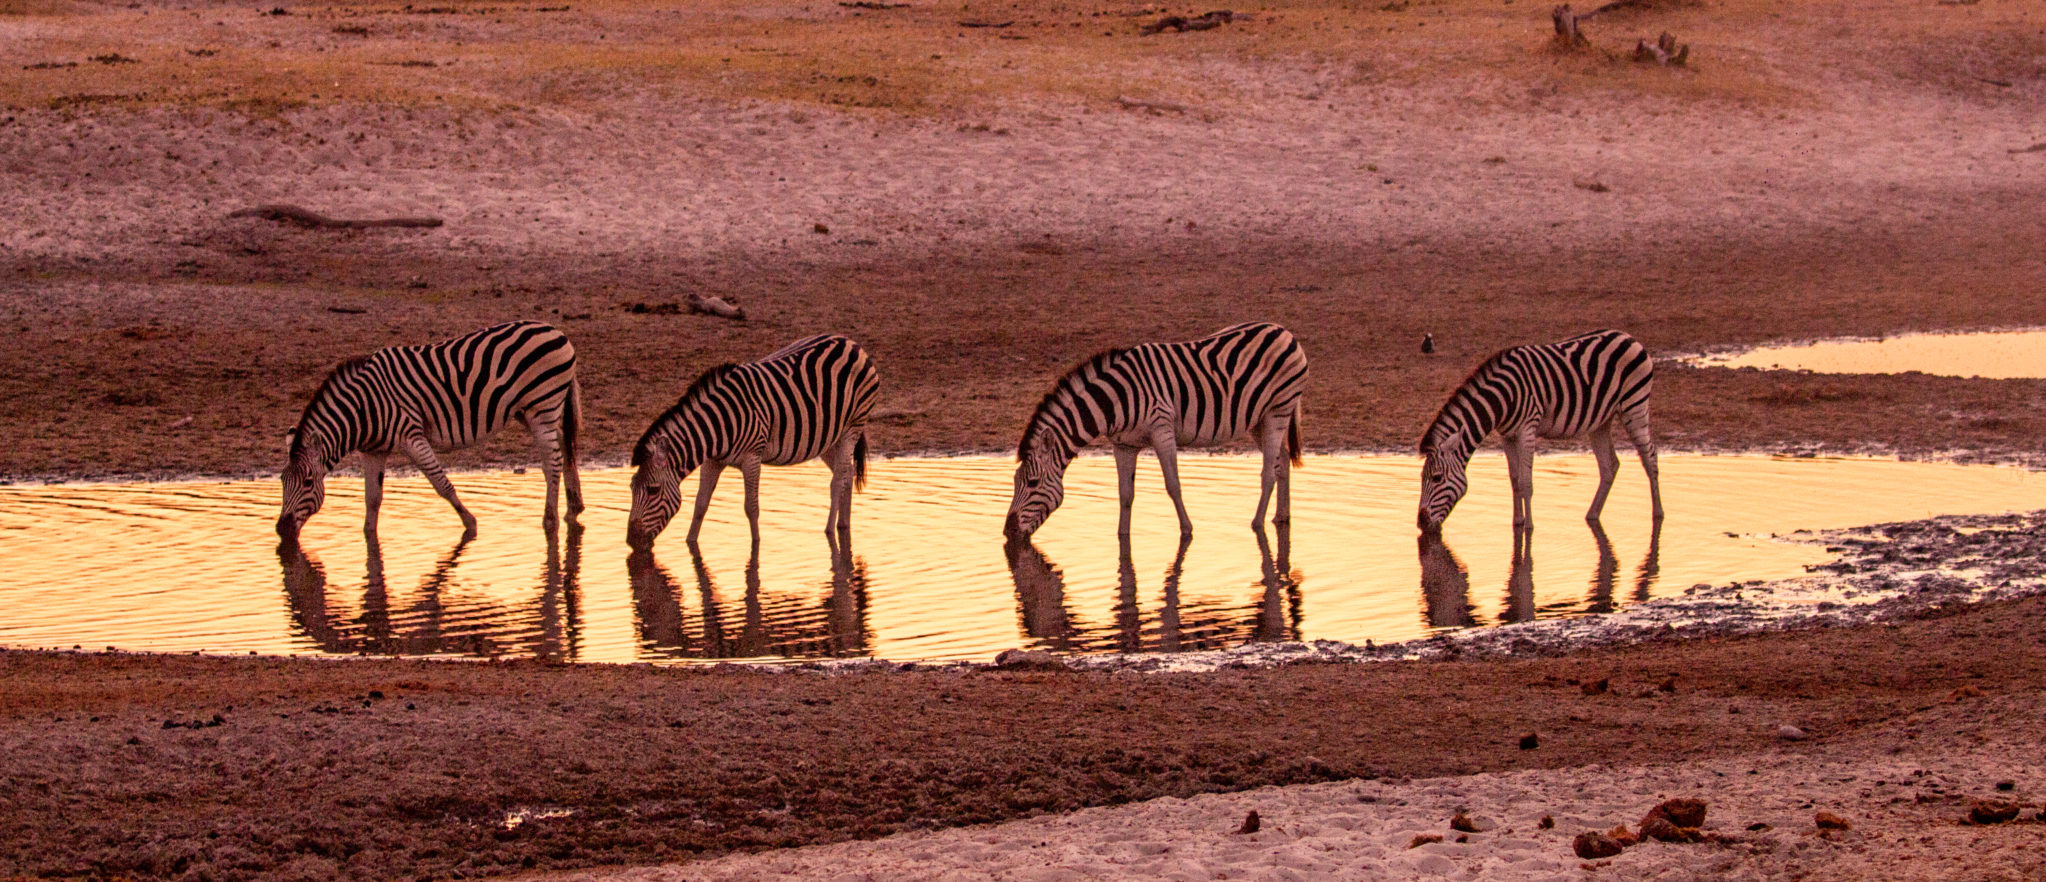 zebra migration in Africa_Boteti River